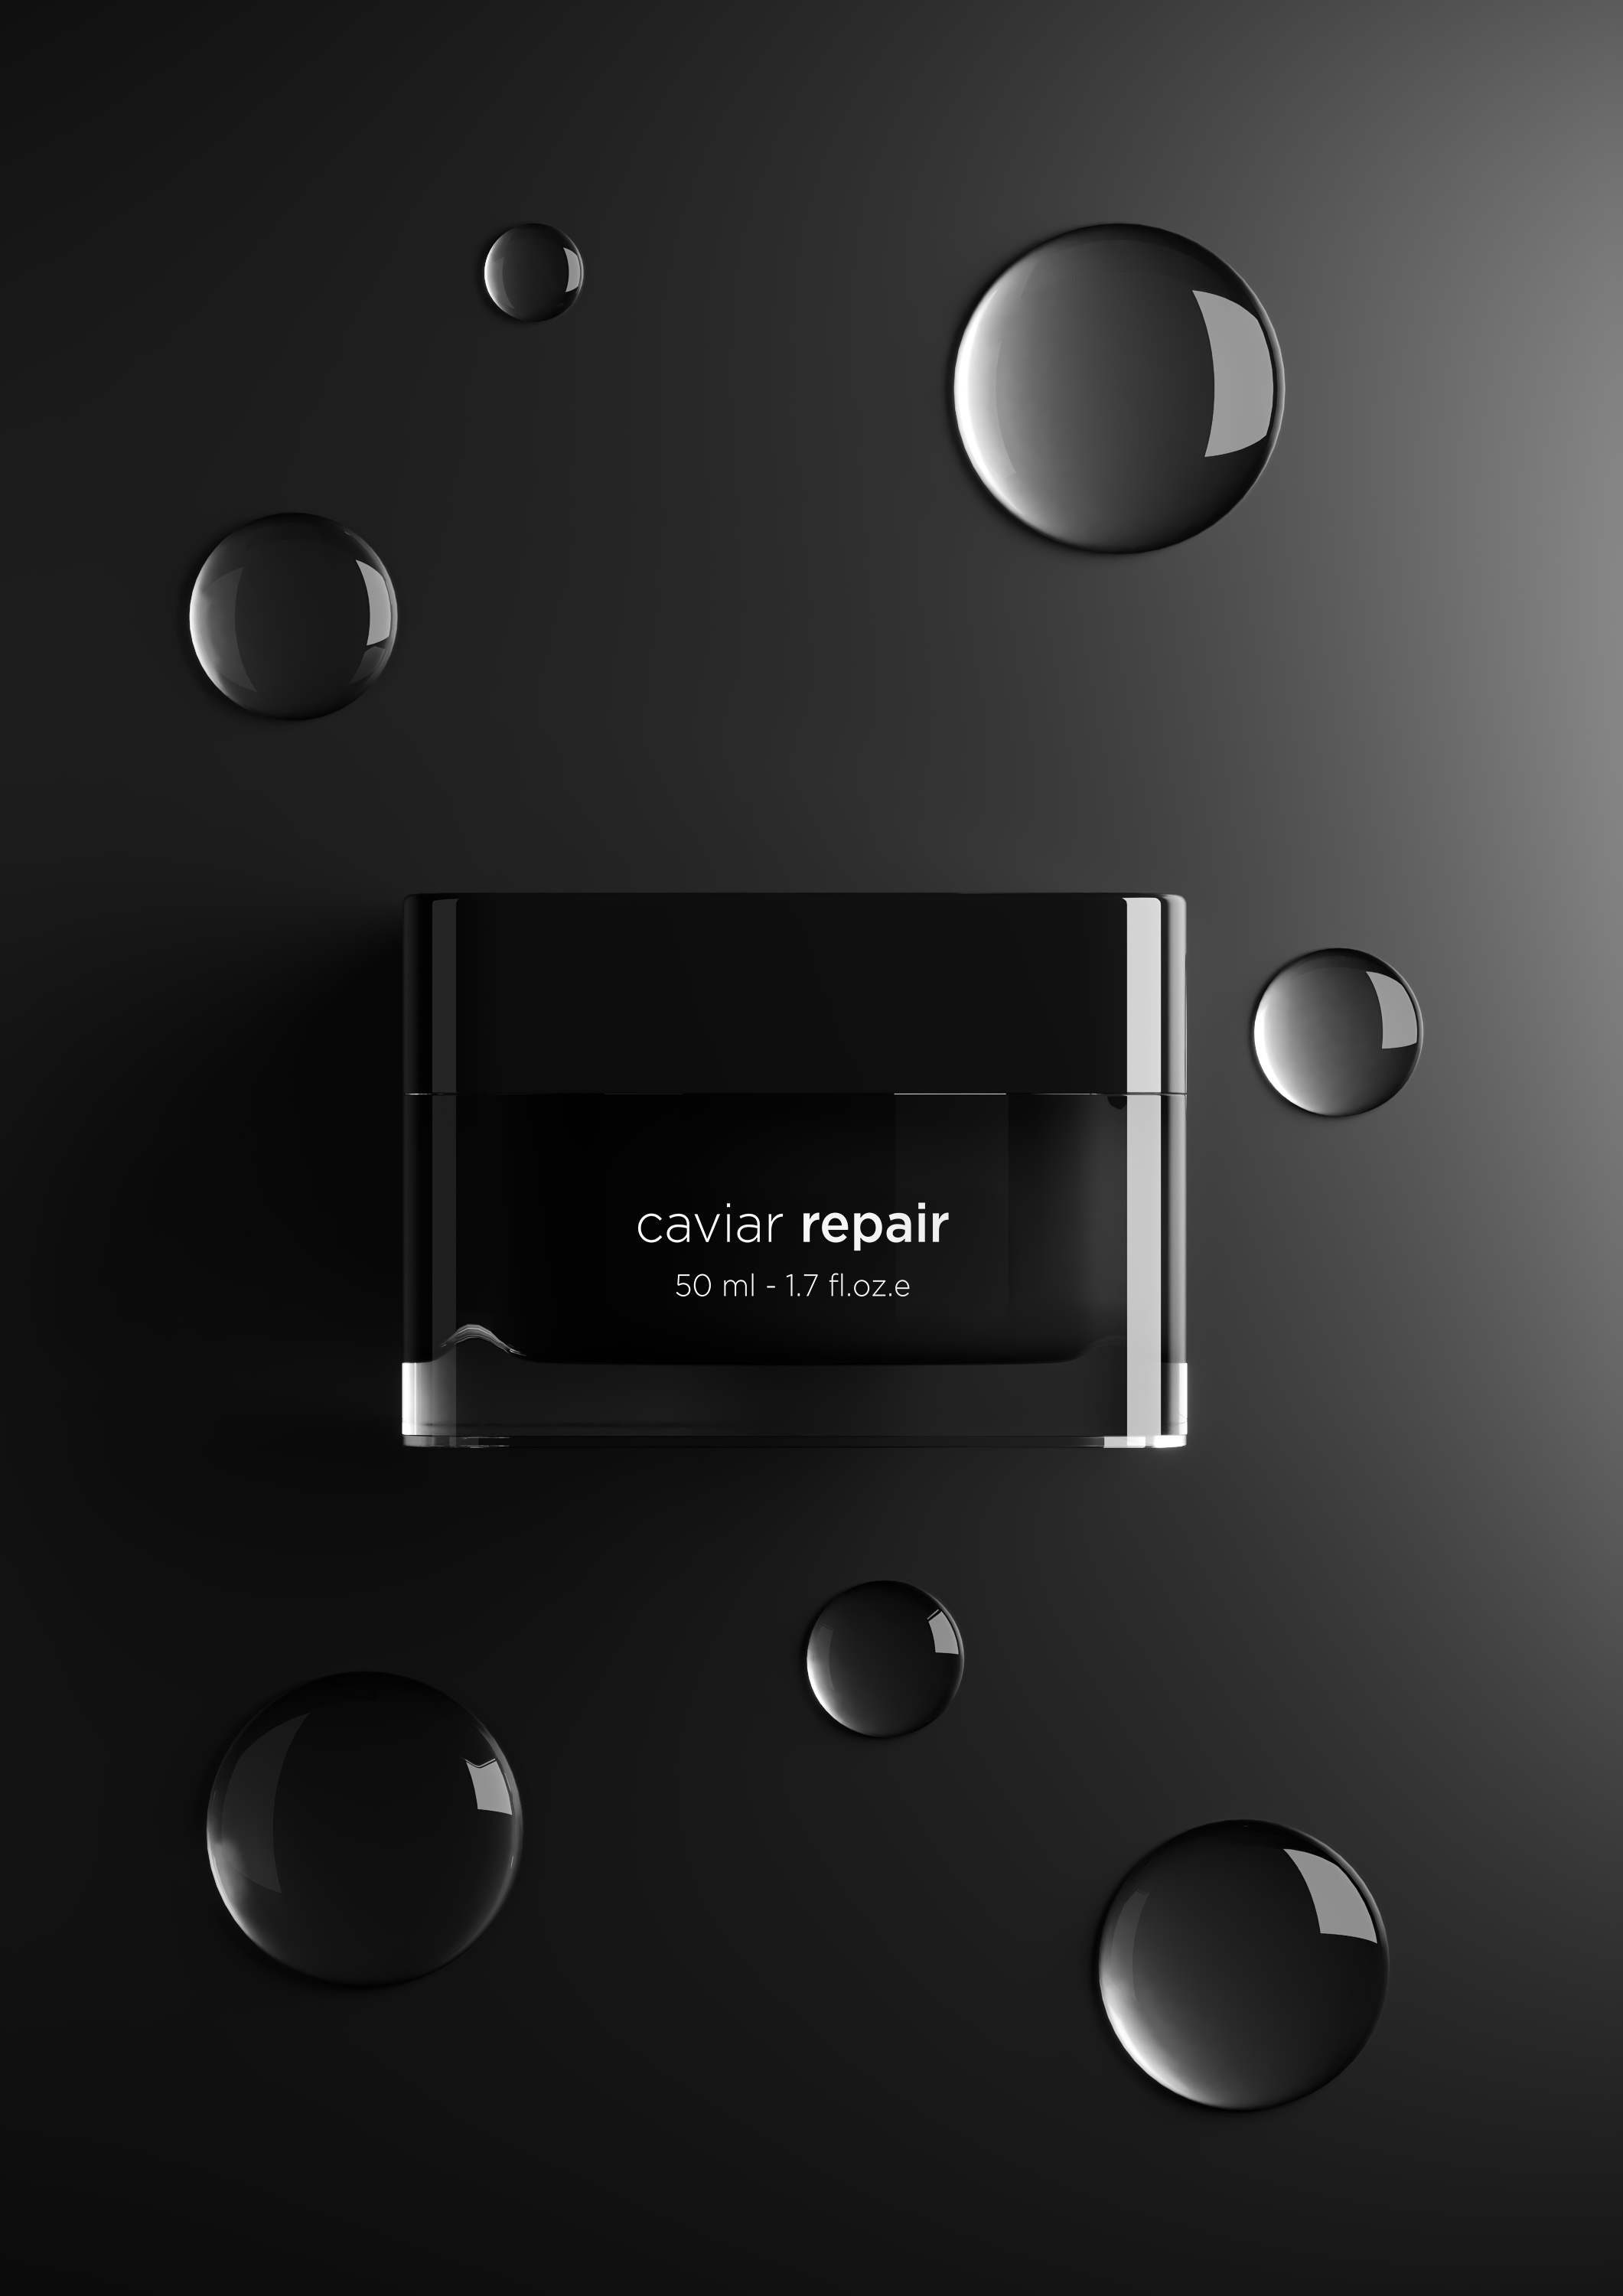 Caviar repair